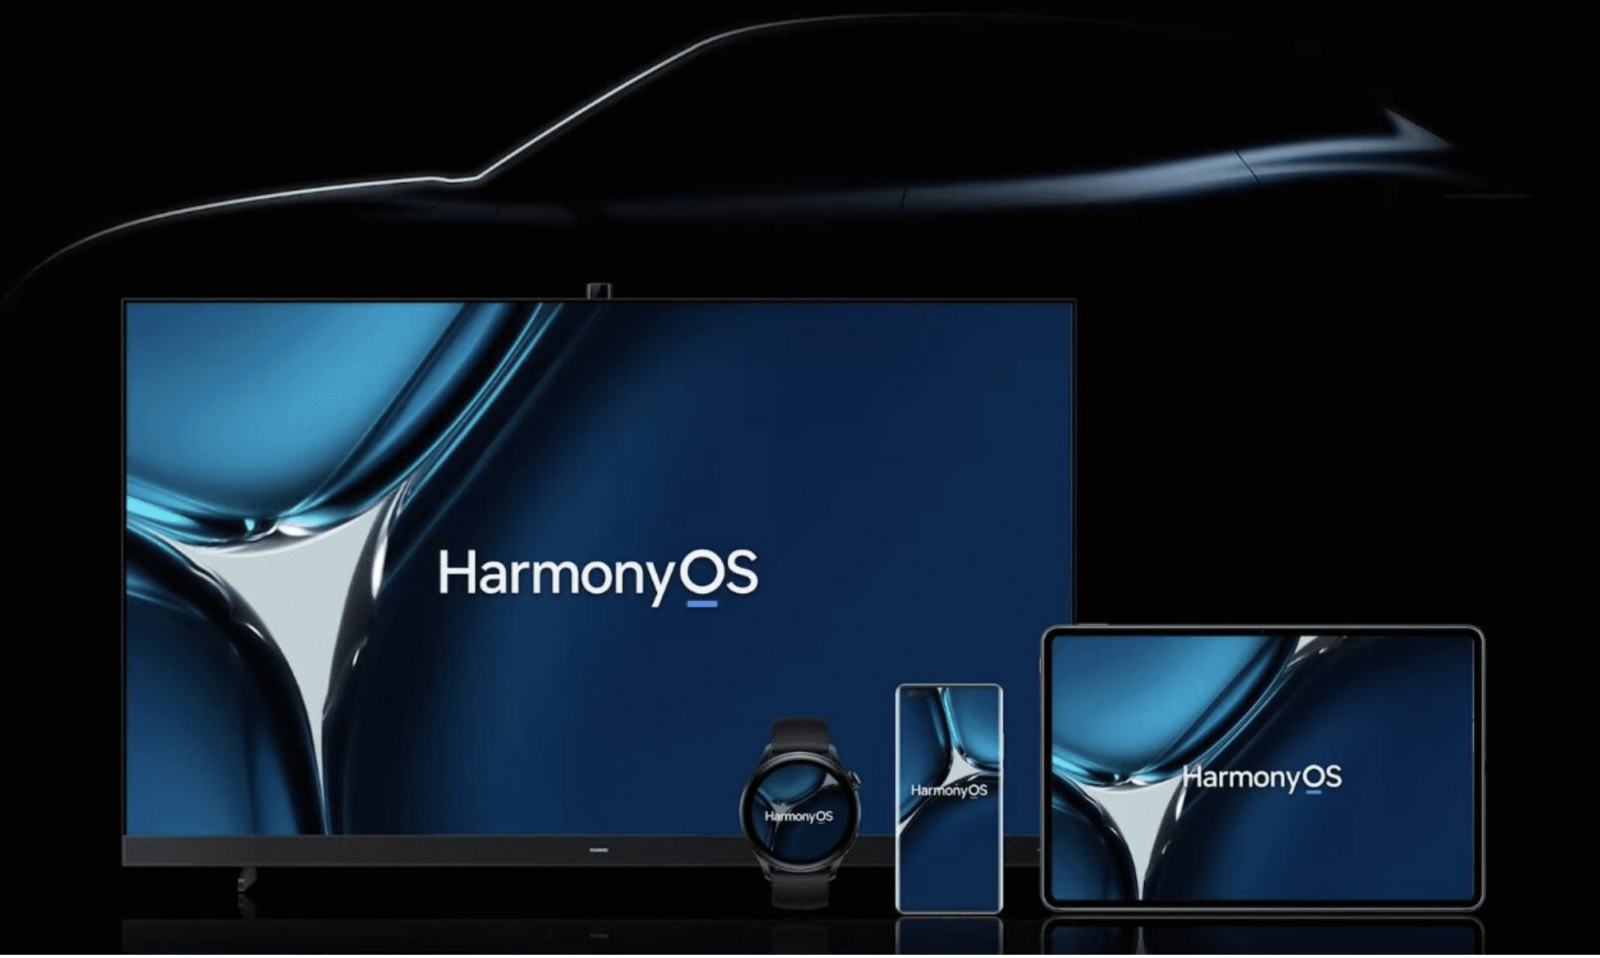 HarmonyOS de Huawei